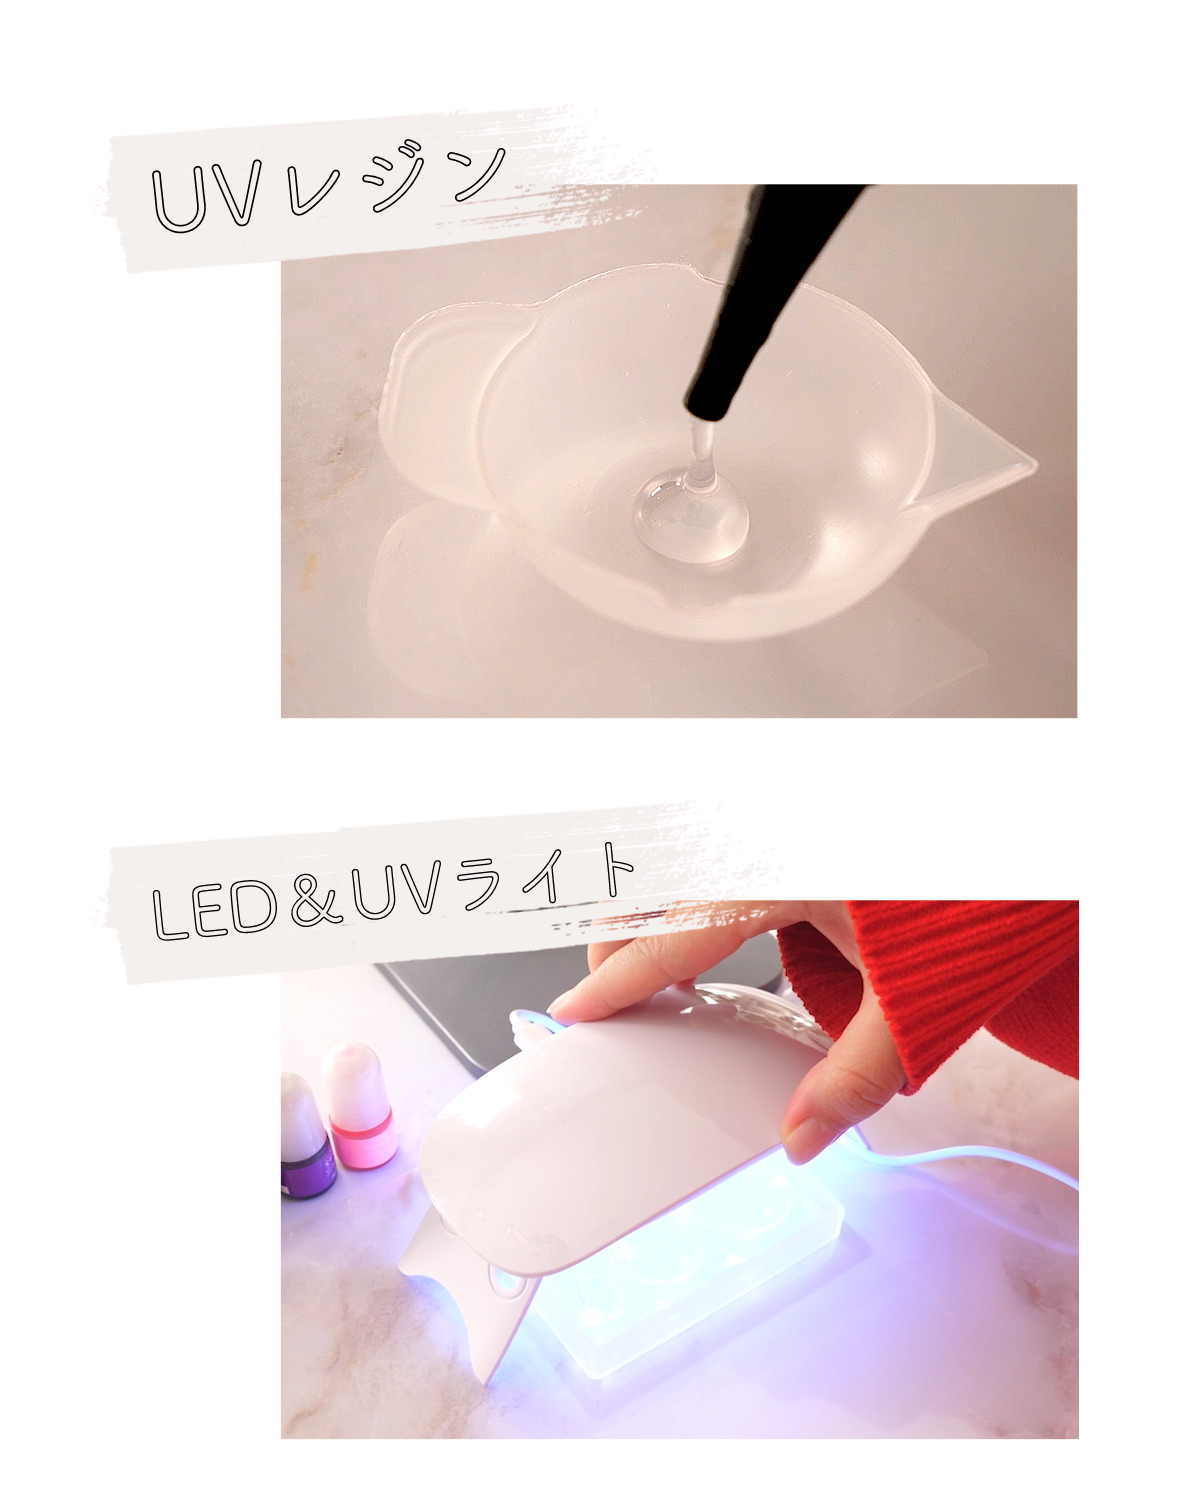 UVレジンとLED&UVライトのイメージ画像